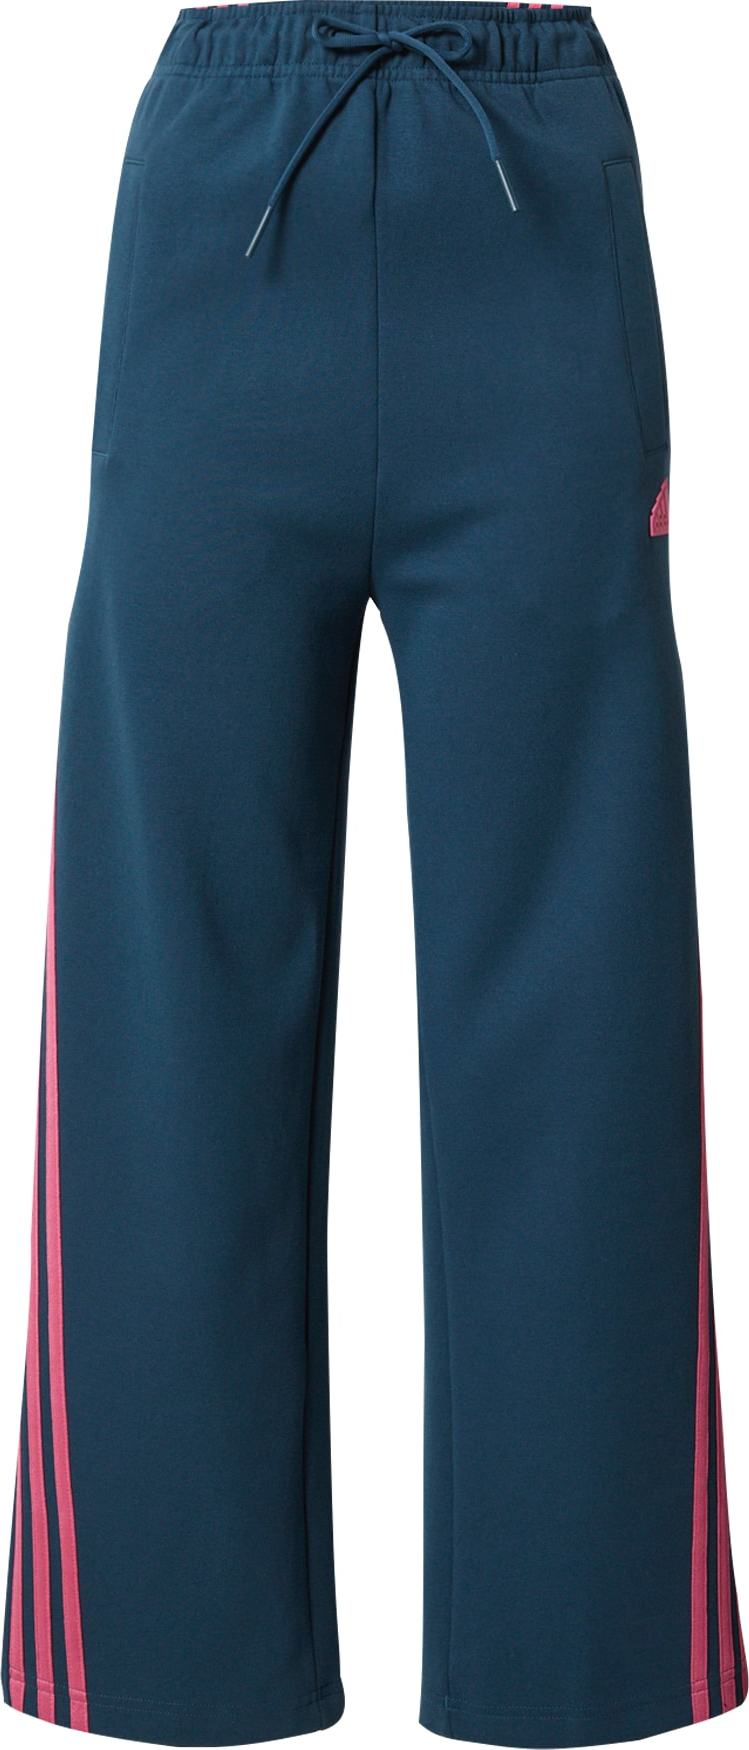 ADIDAS PERFORMANCE Sportovní kalhoty 'Future Icons' petrolejová / pink